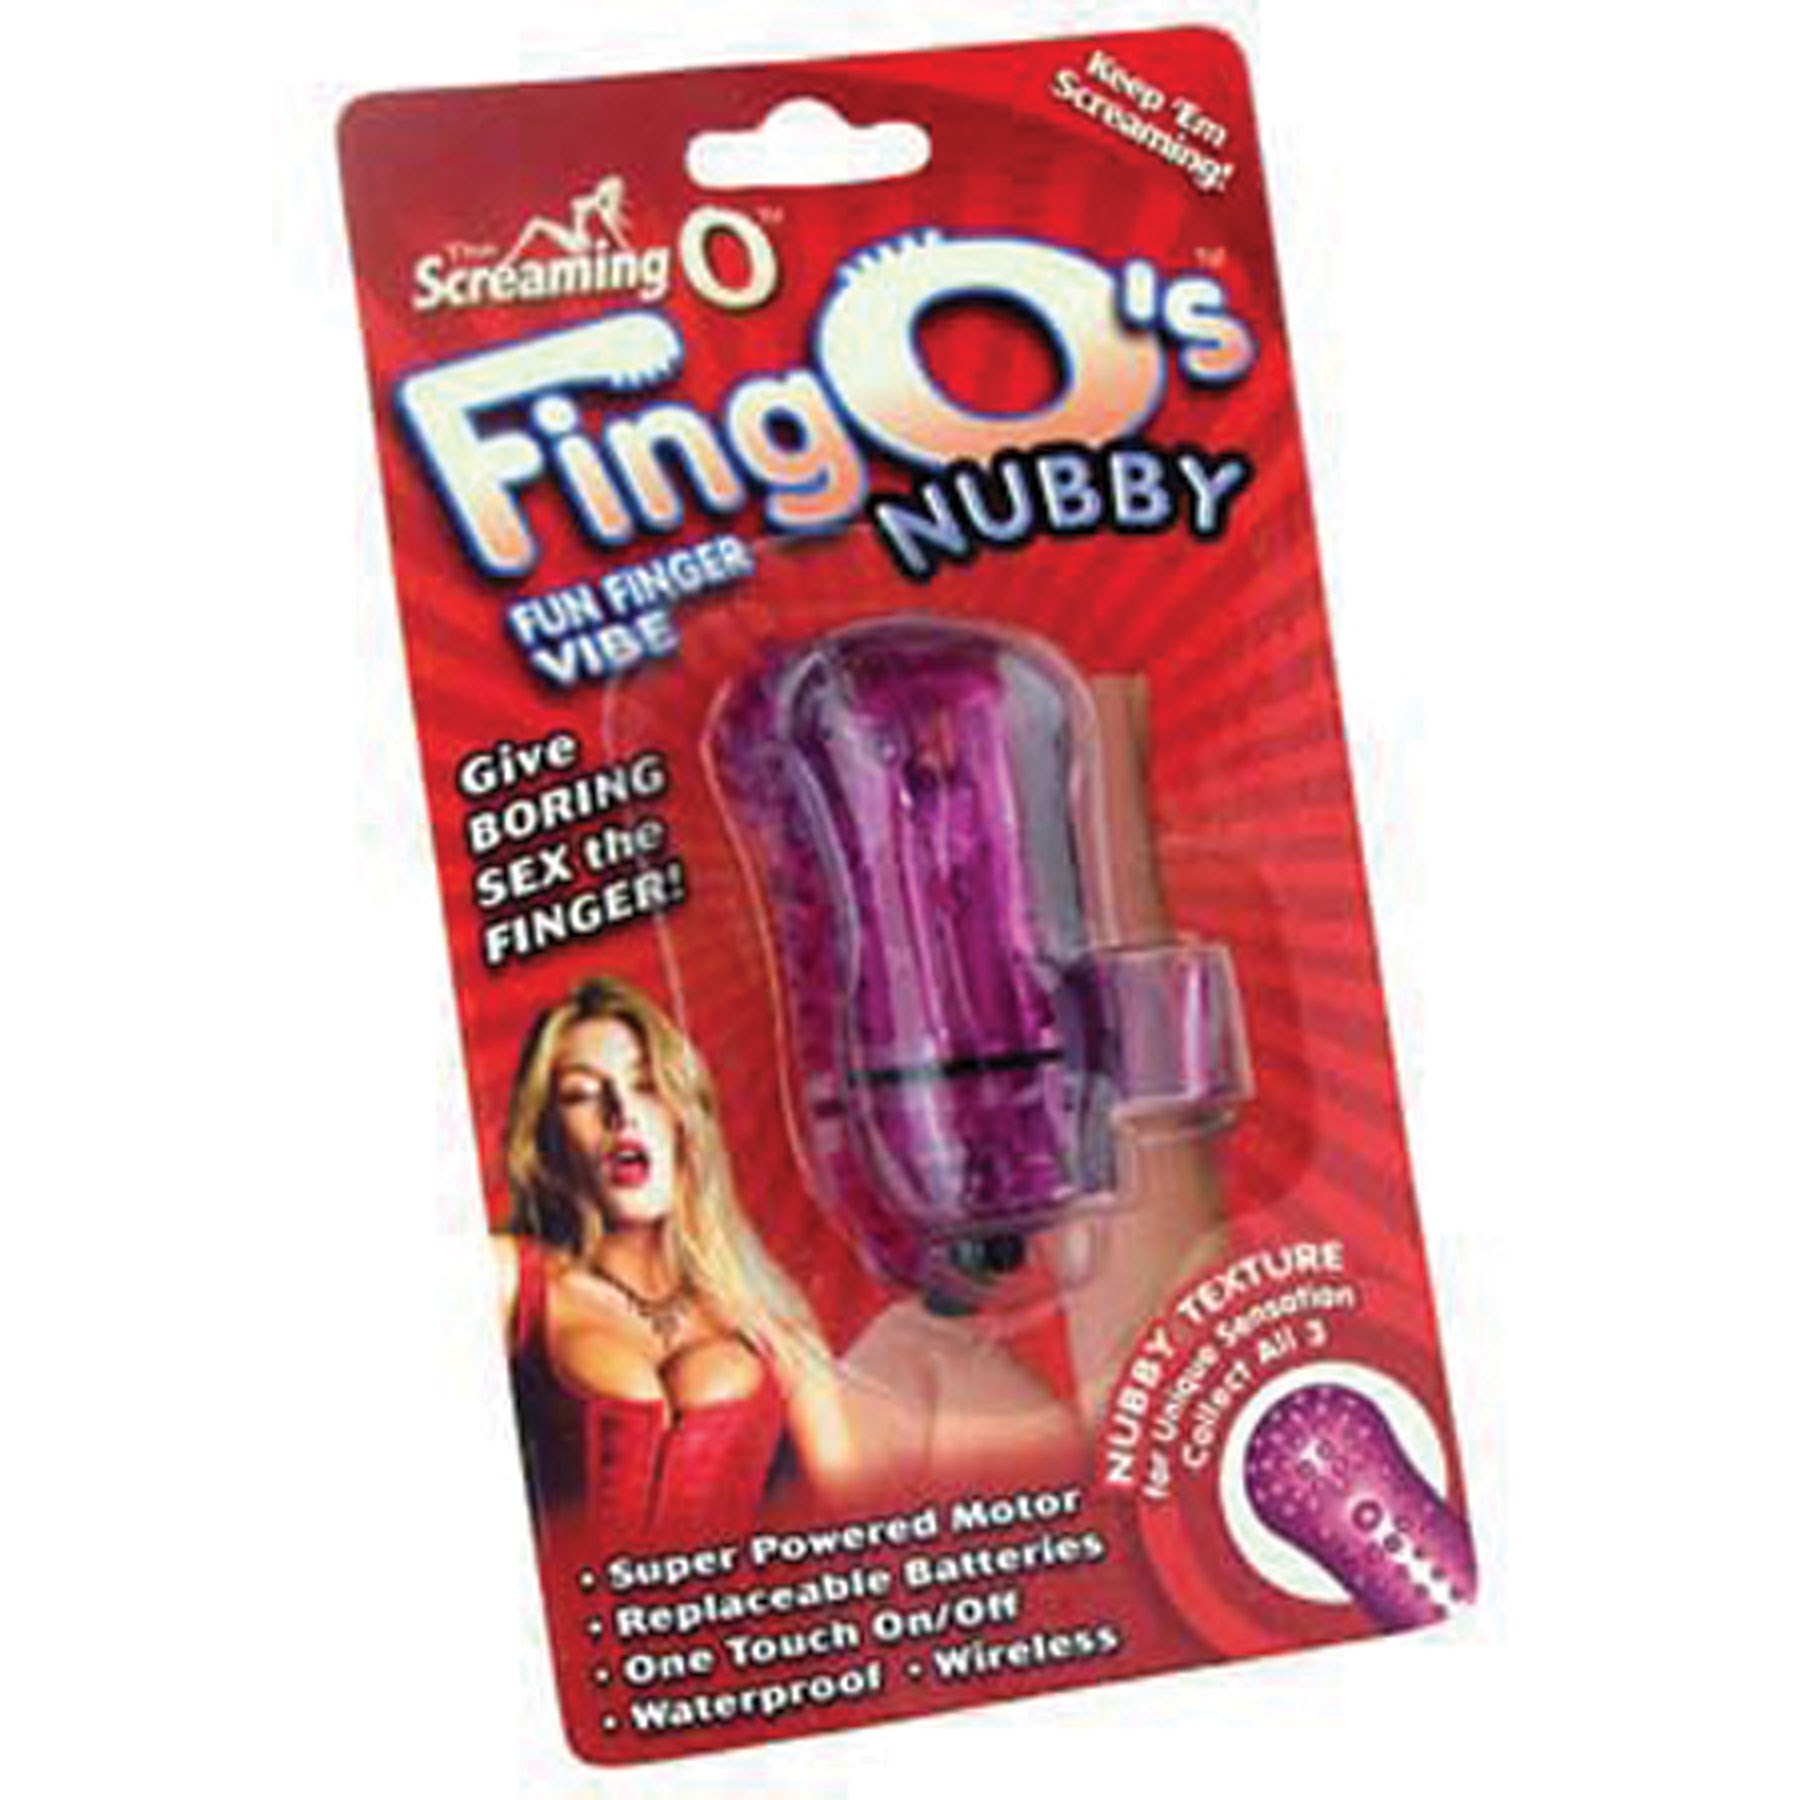 Fingo Nubby Finger Vibrator package